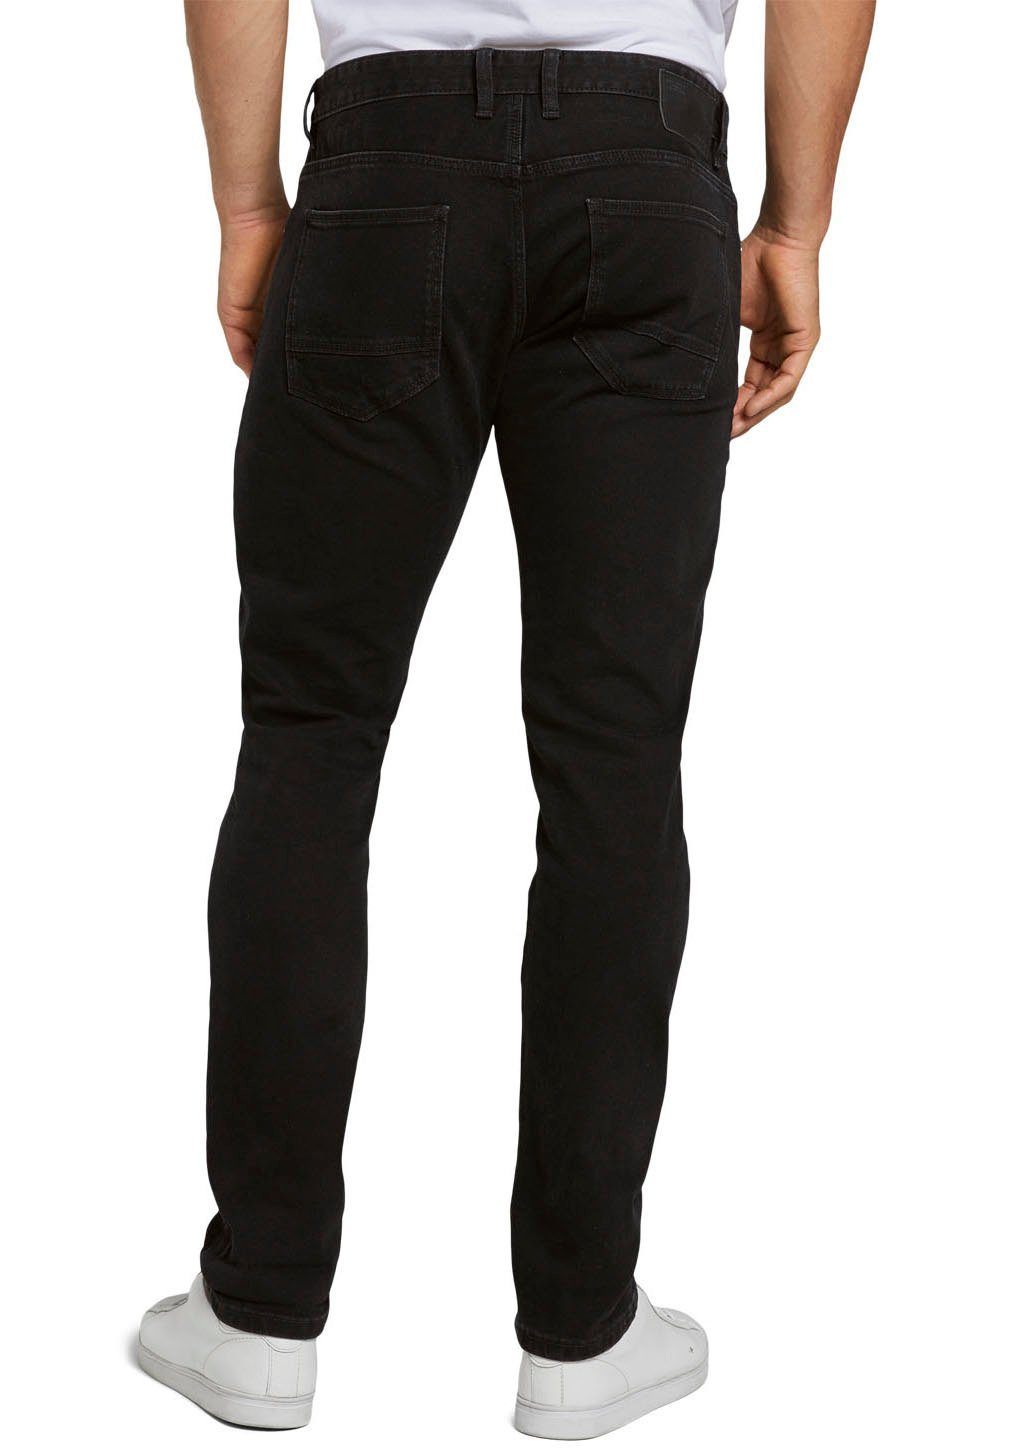 Slim-fit-Jeans TOM TROY unifarben black-denim TAILOR